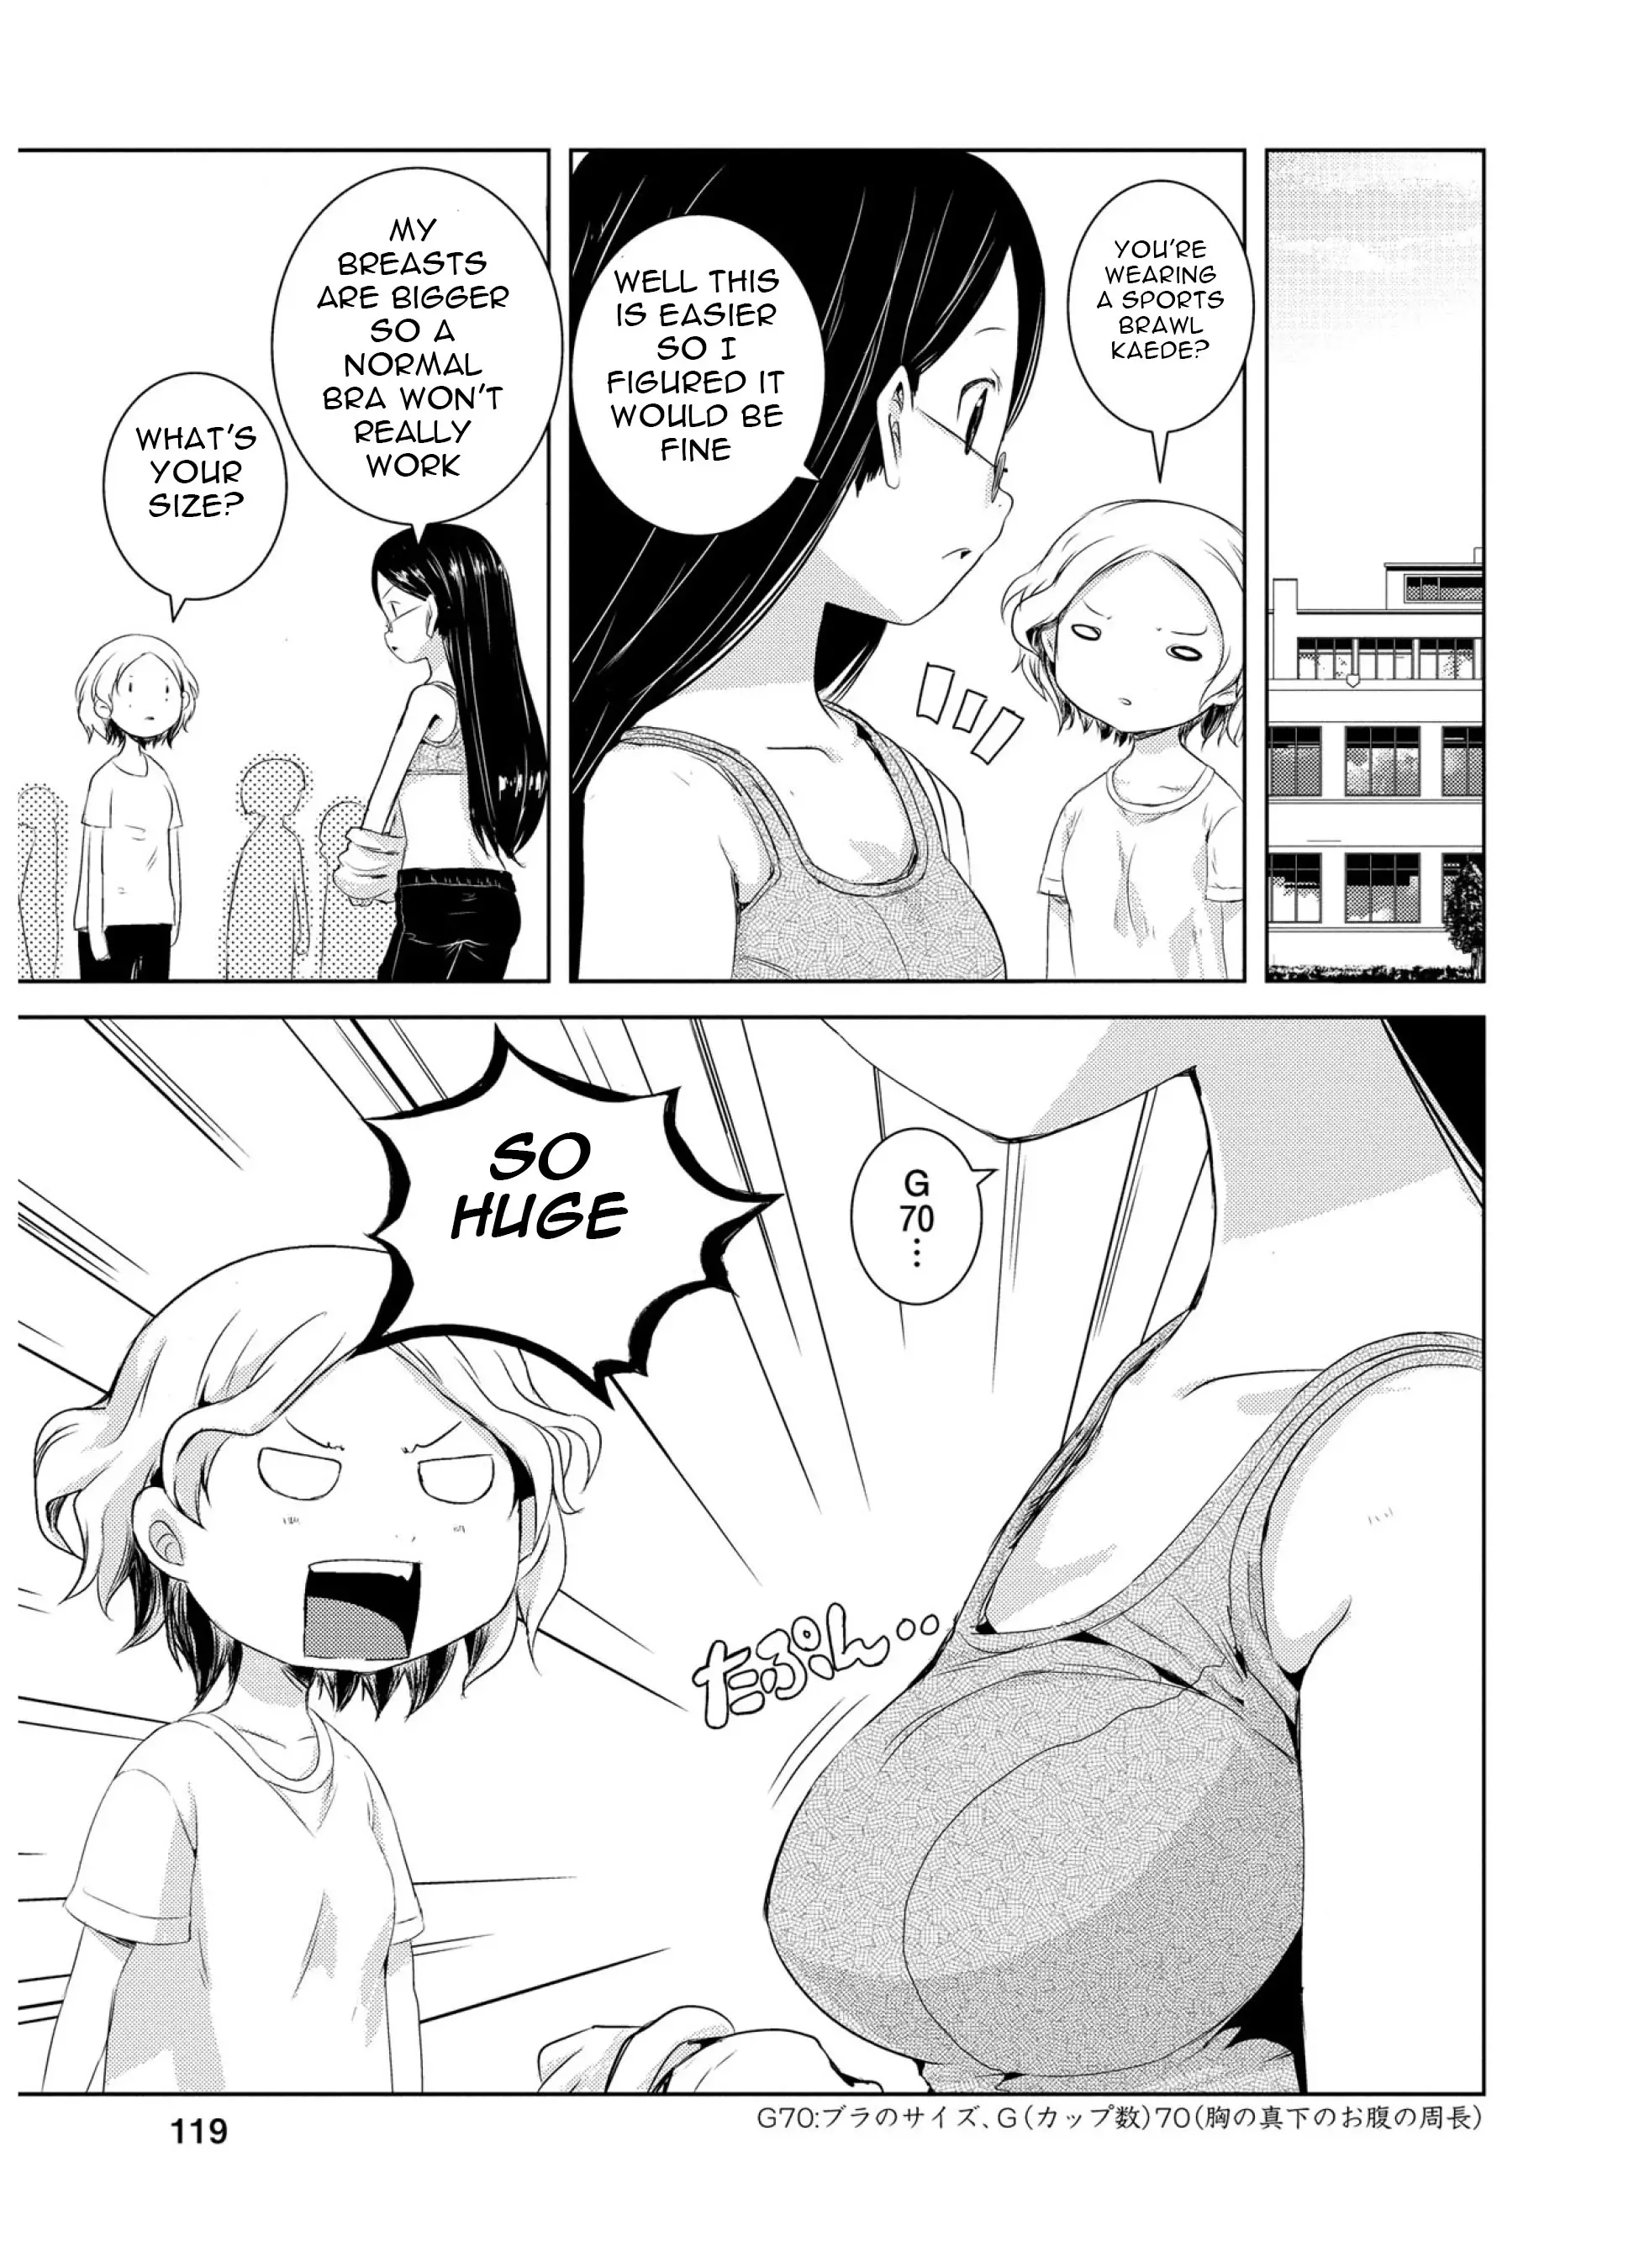 Yama No Susume - 47 page 1